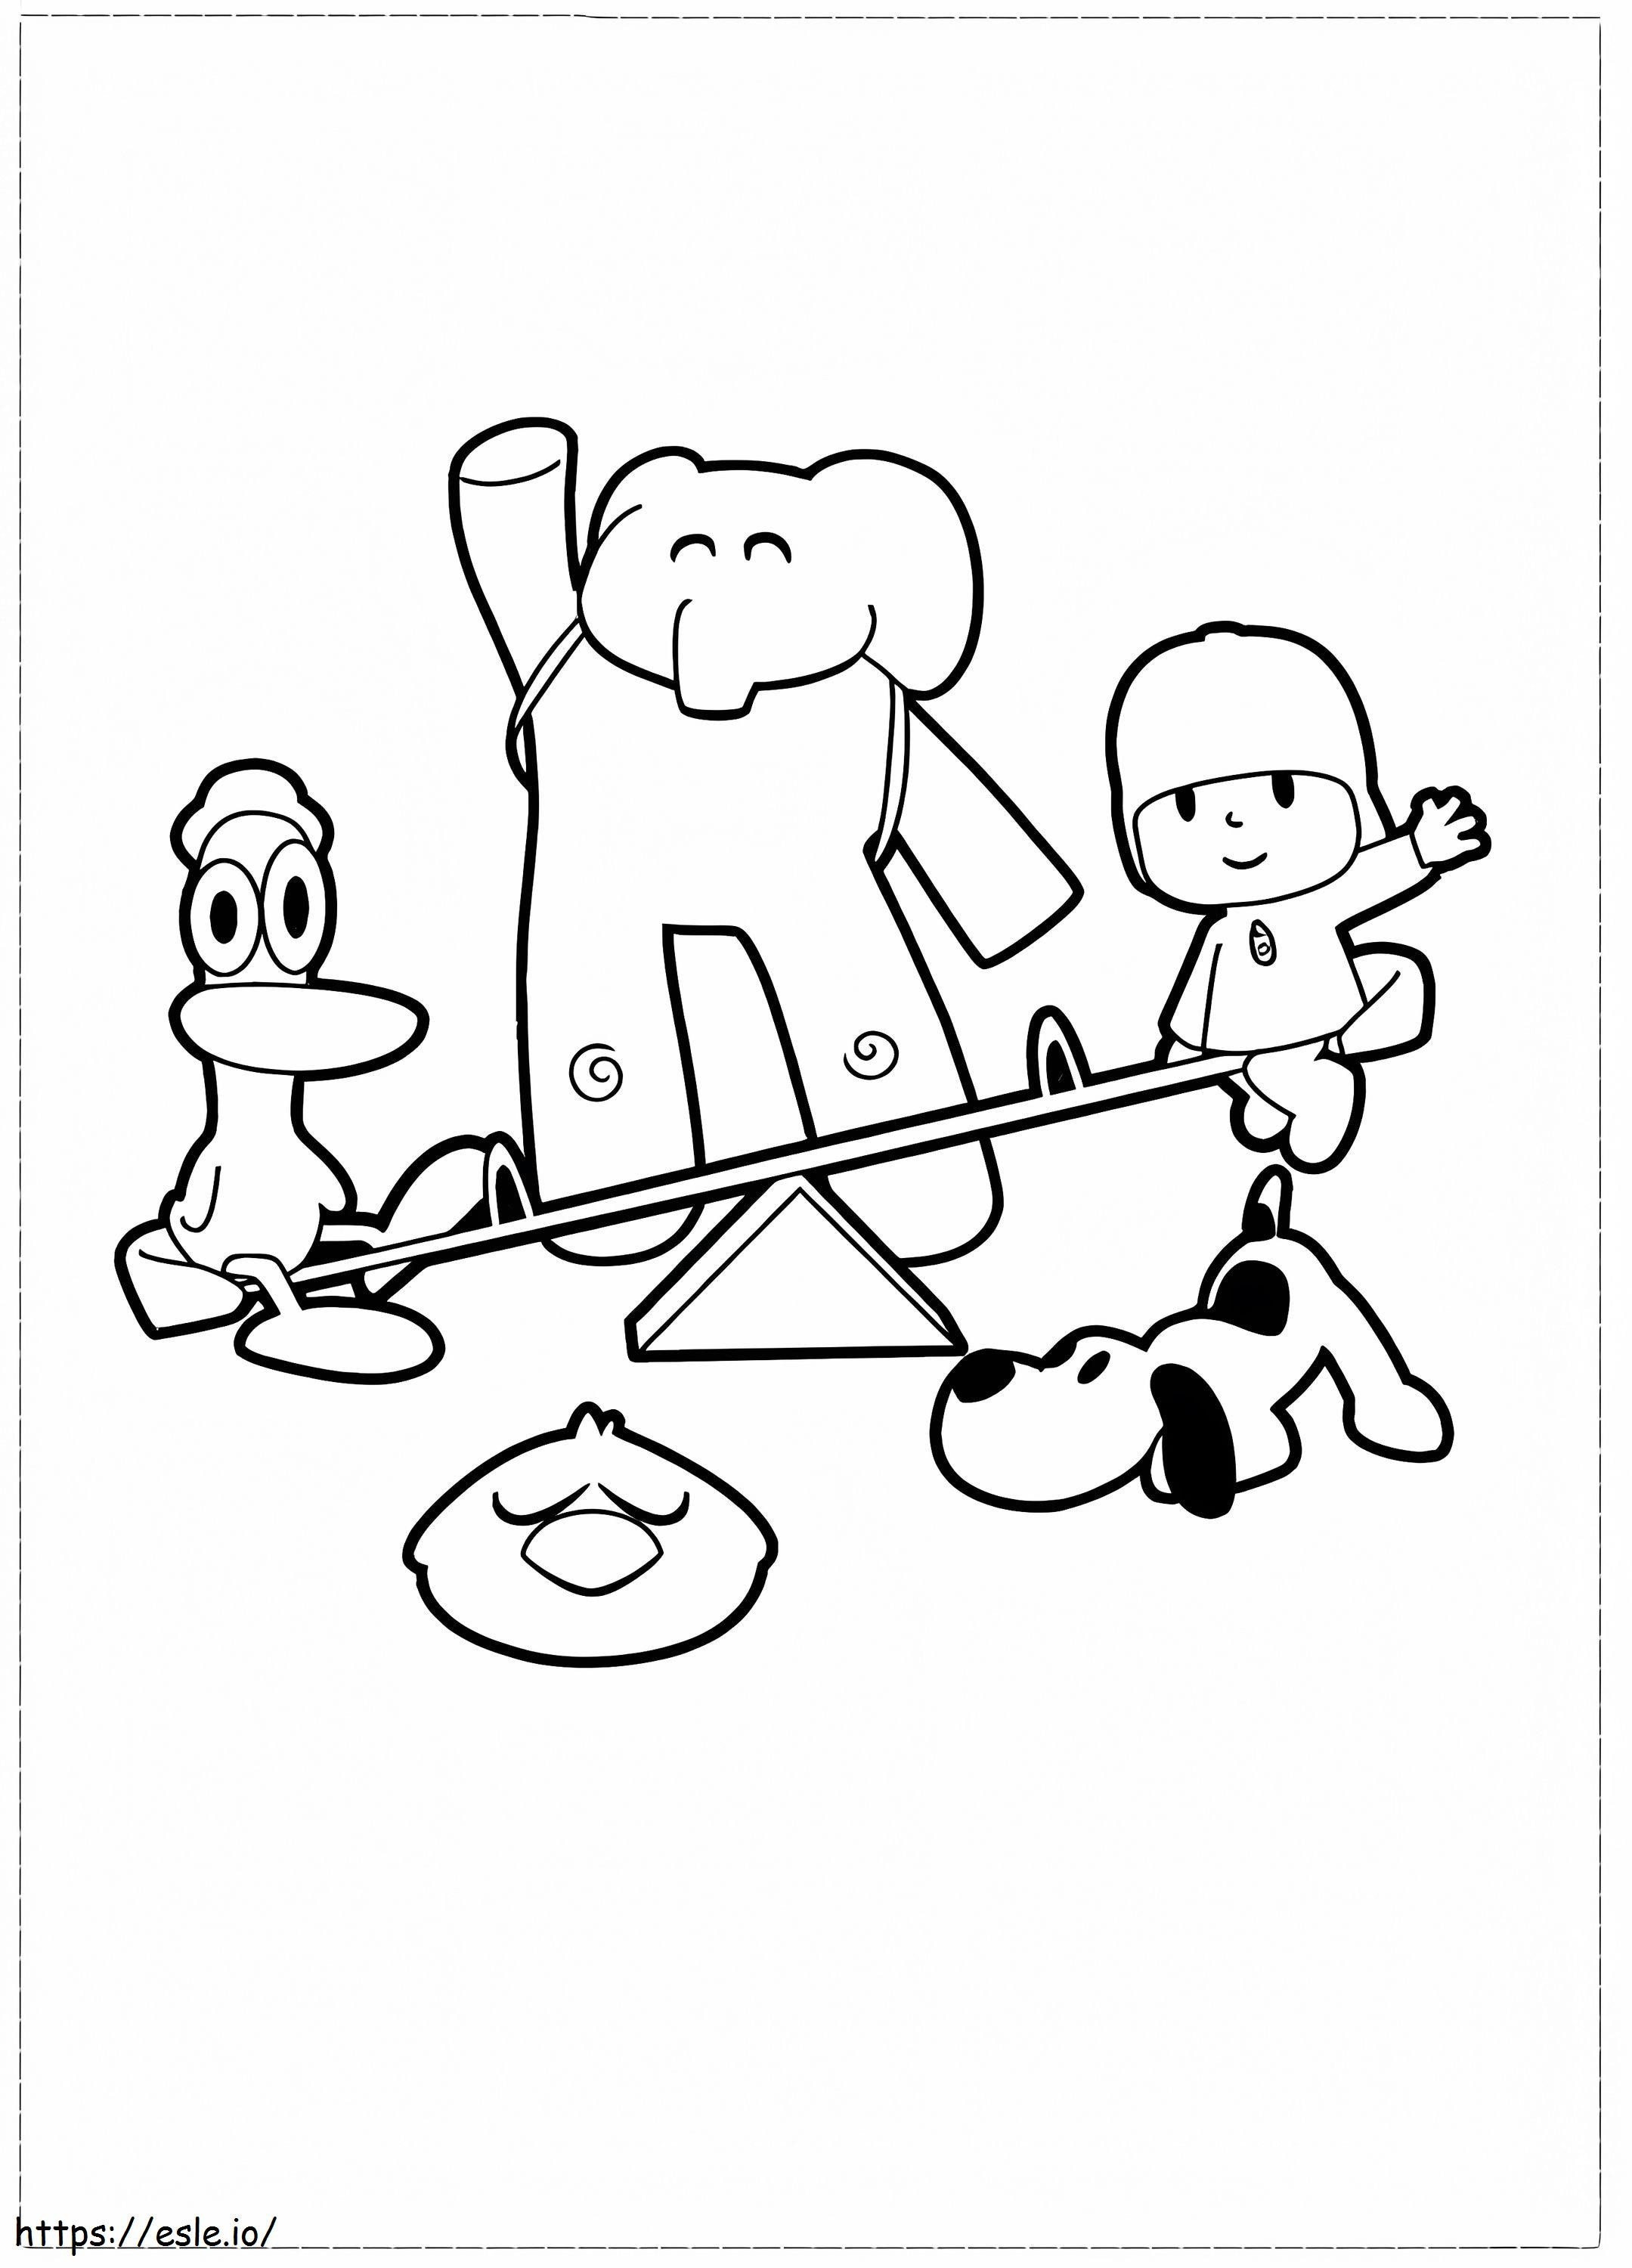 Pocoyo y sus amigos jugando al balancín para colorear